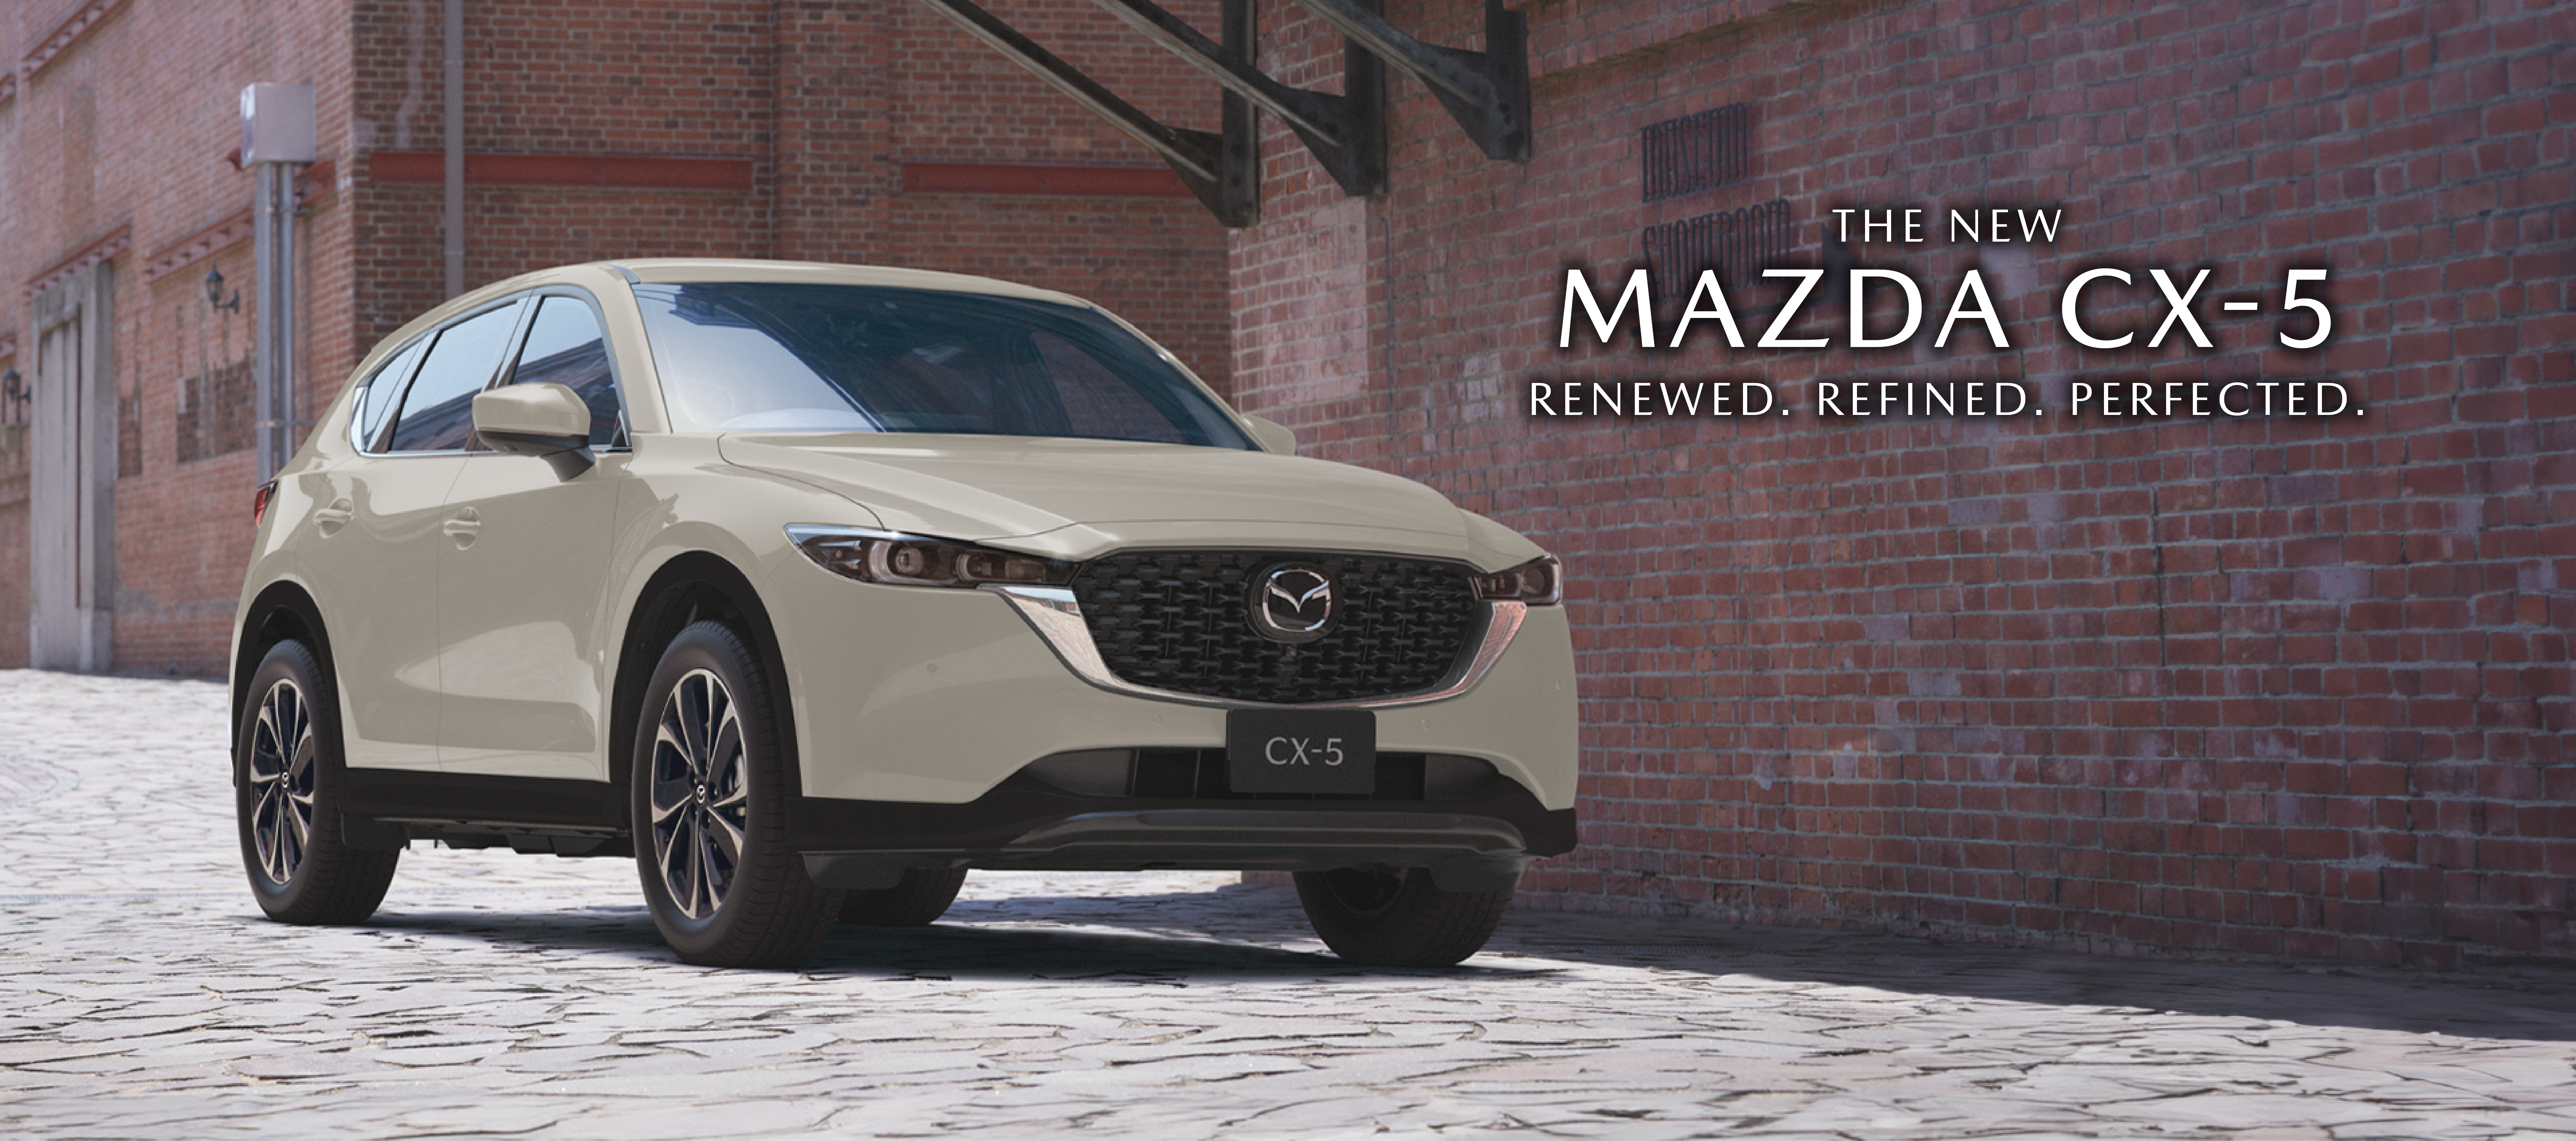 Mazda Malaysia